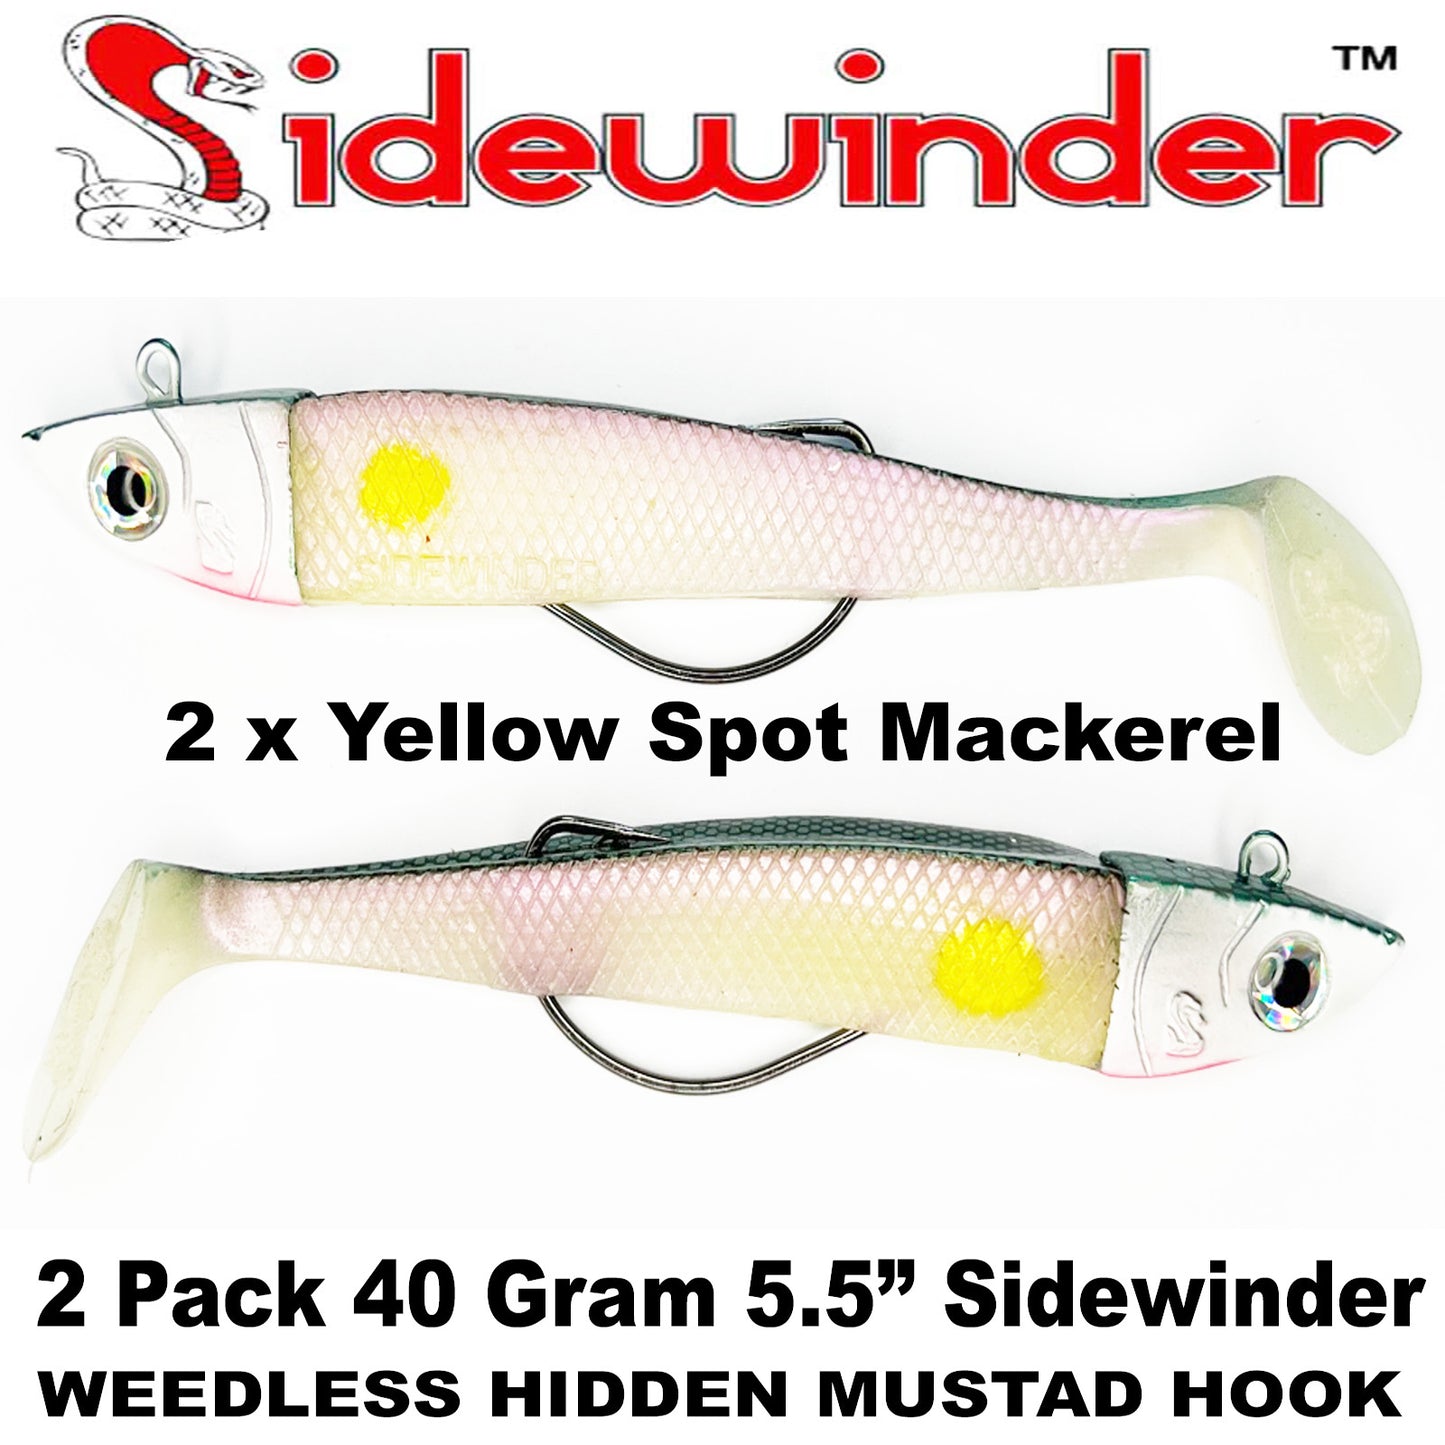 SIDEWINDER™ WEEDLESS 40gm LURES